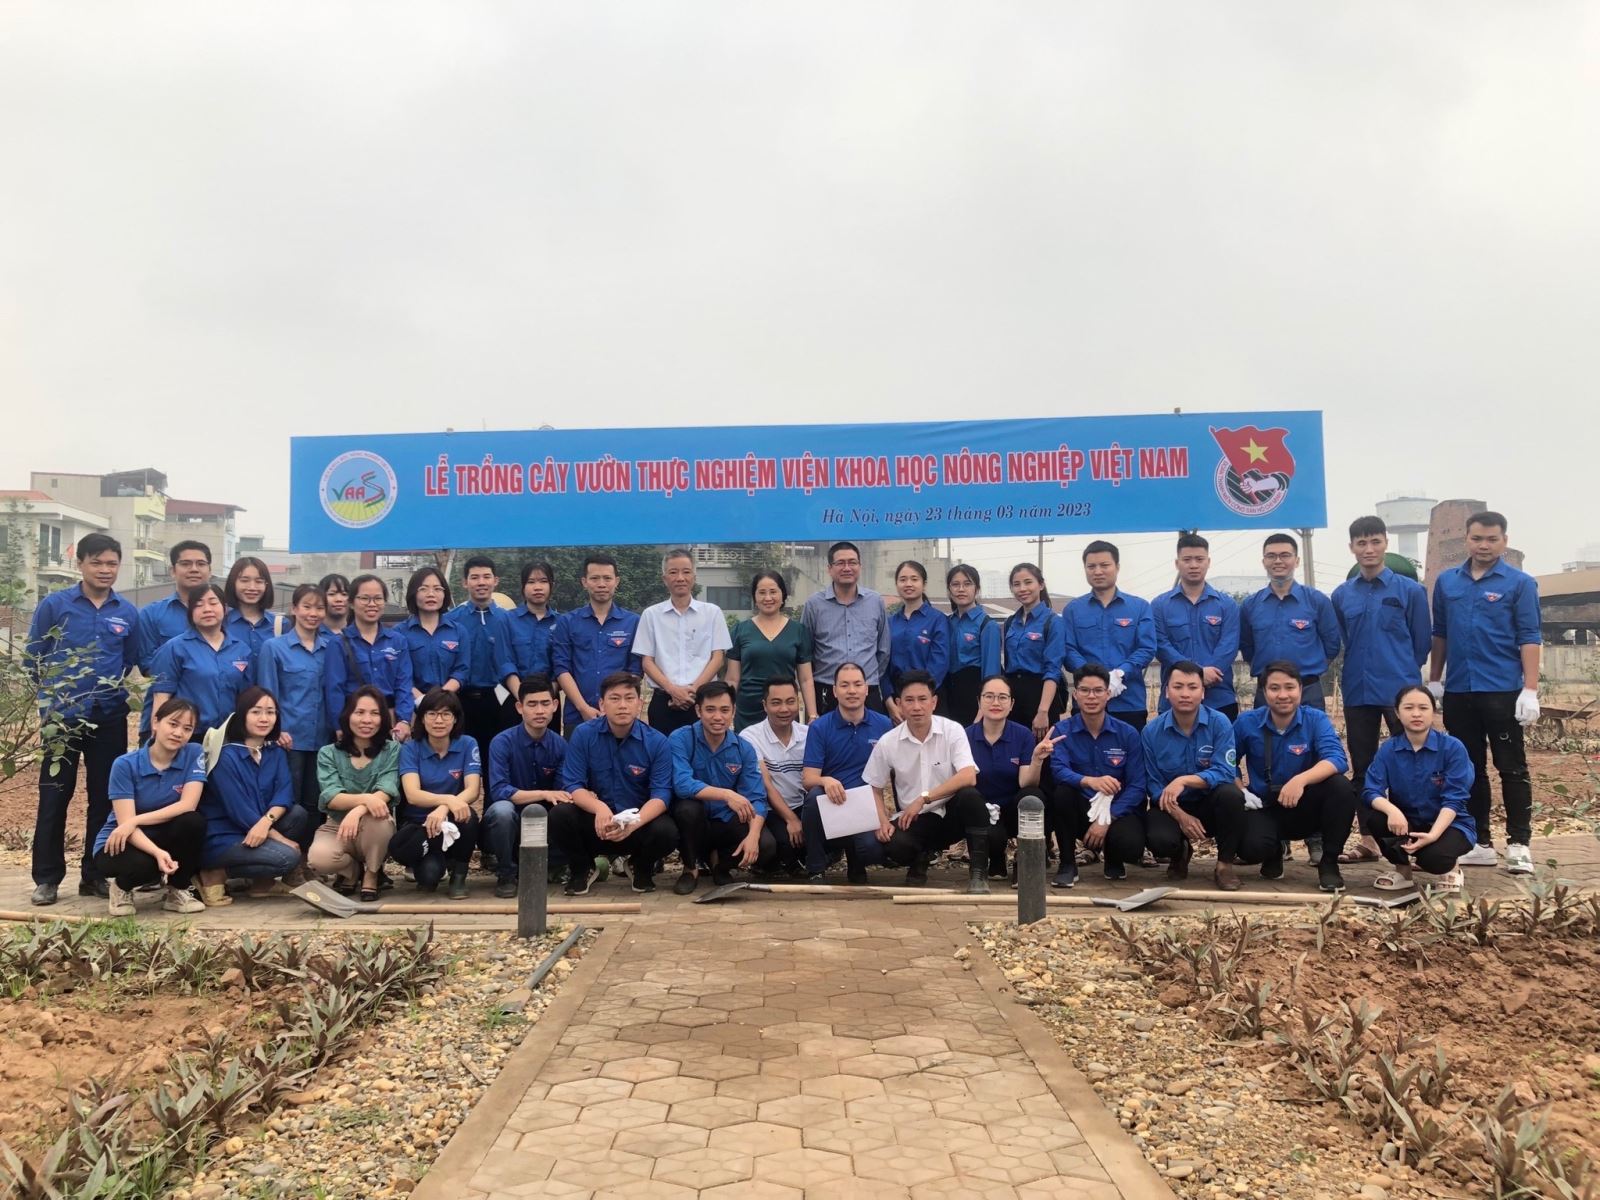 Lễ trồng cây vườn thực nghiệm Viện Khoa học Nông nghiệp Việt Nam